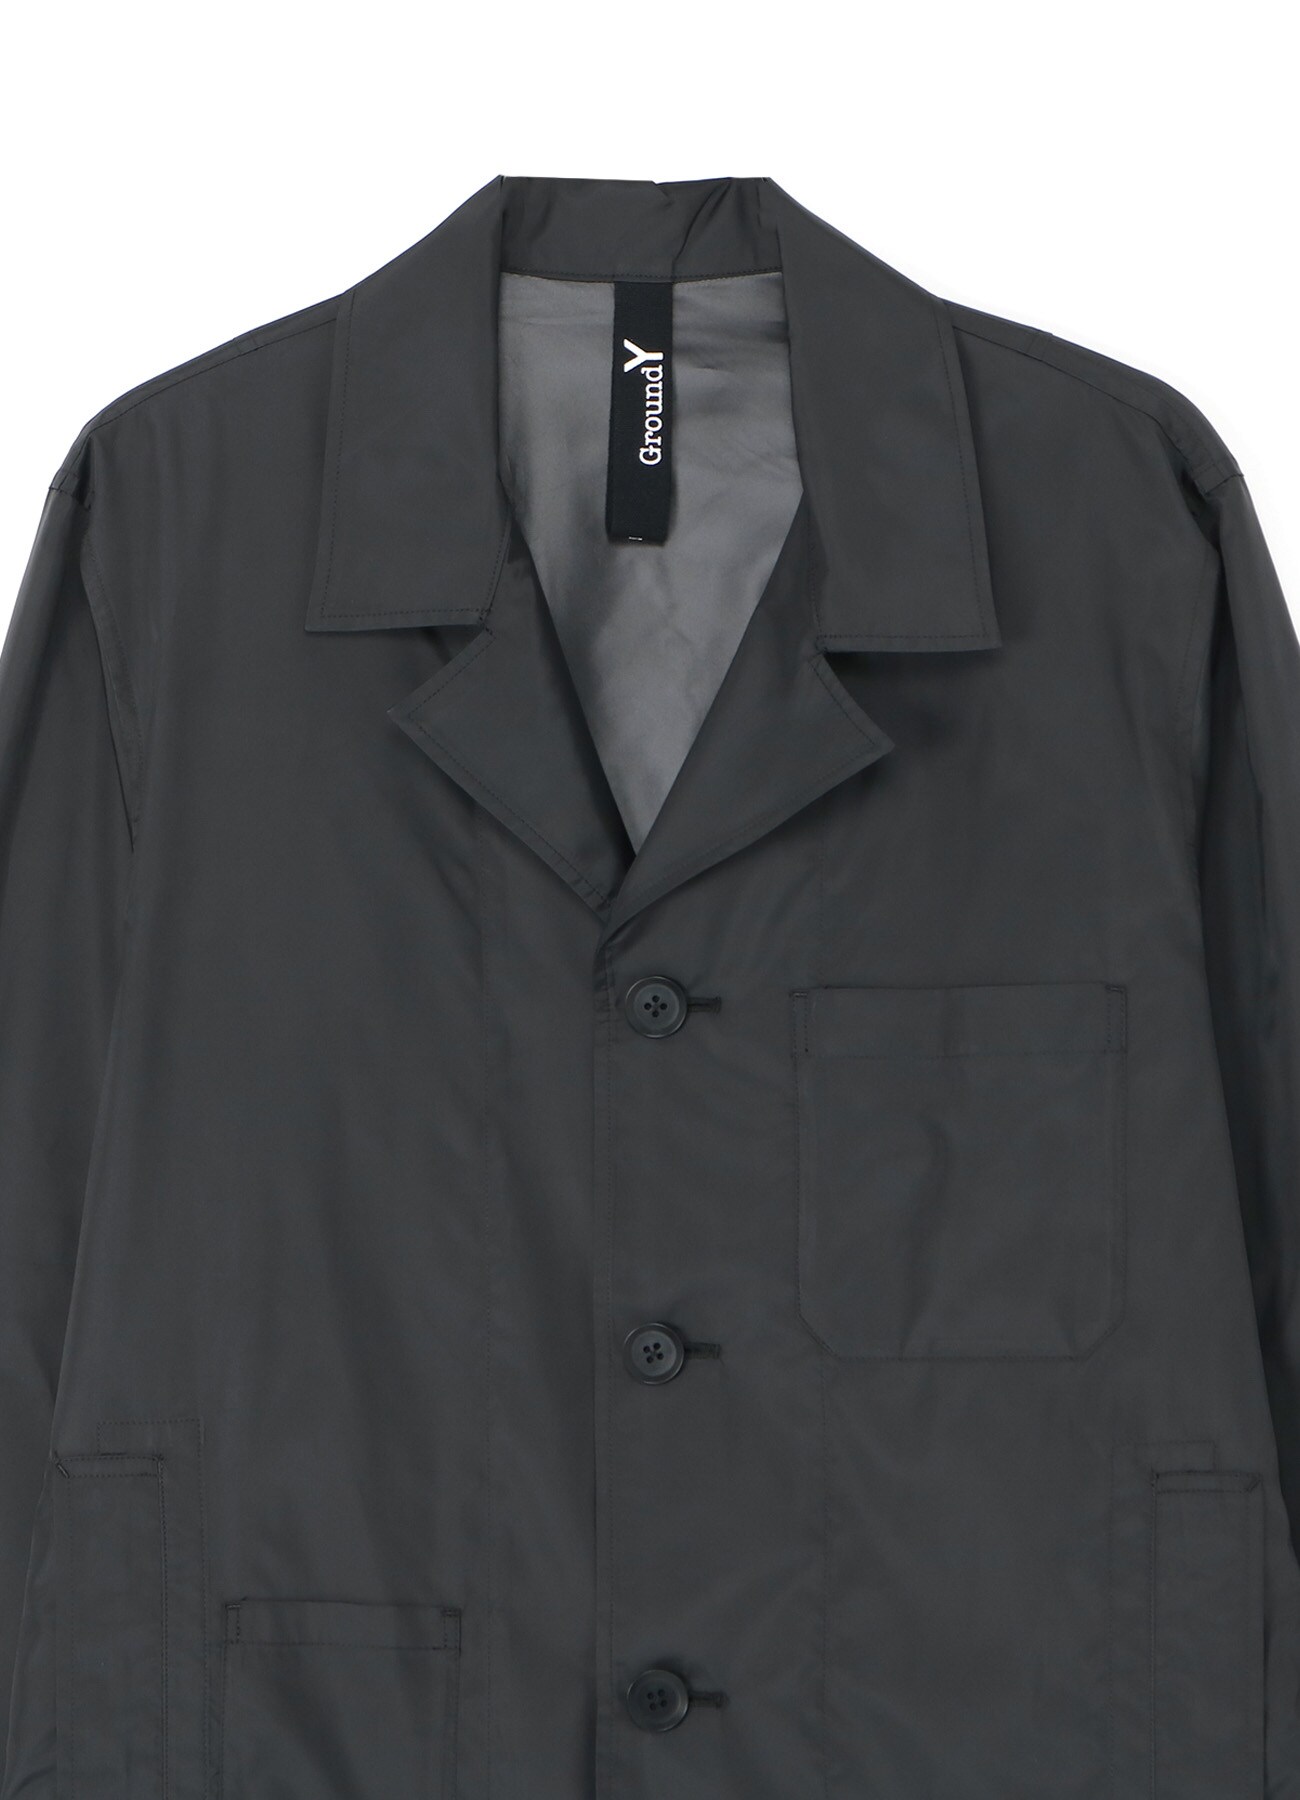 Pe/Taffeta Long work shirt coat